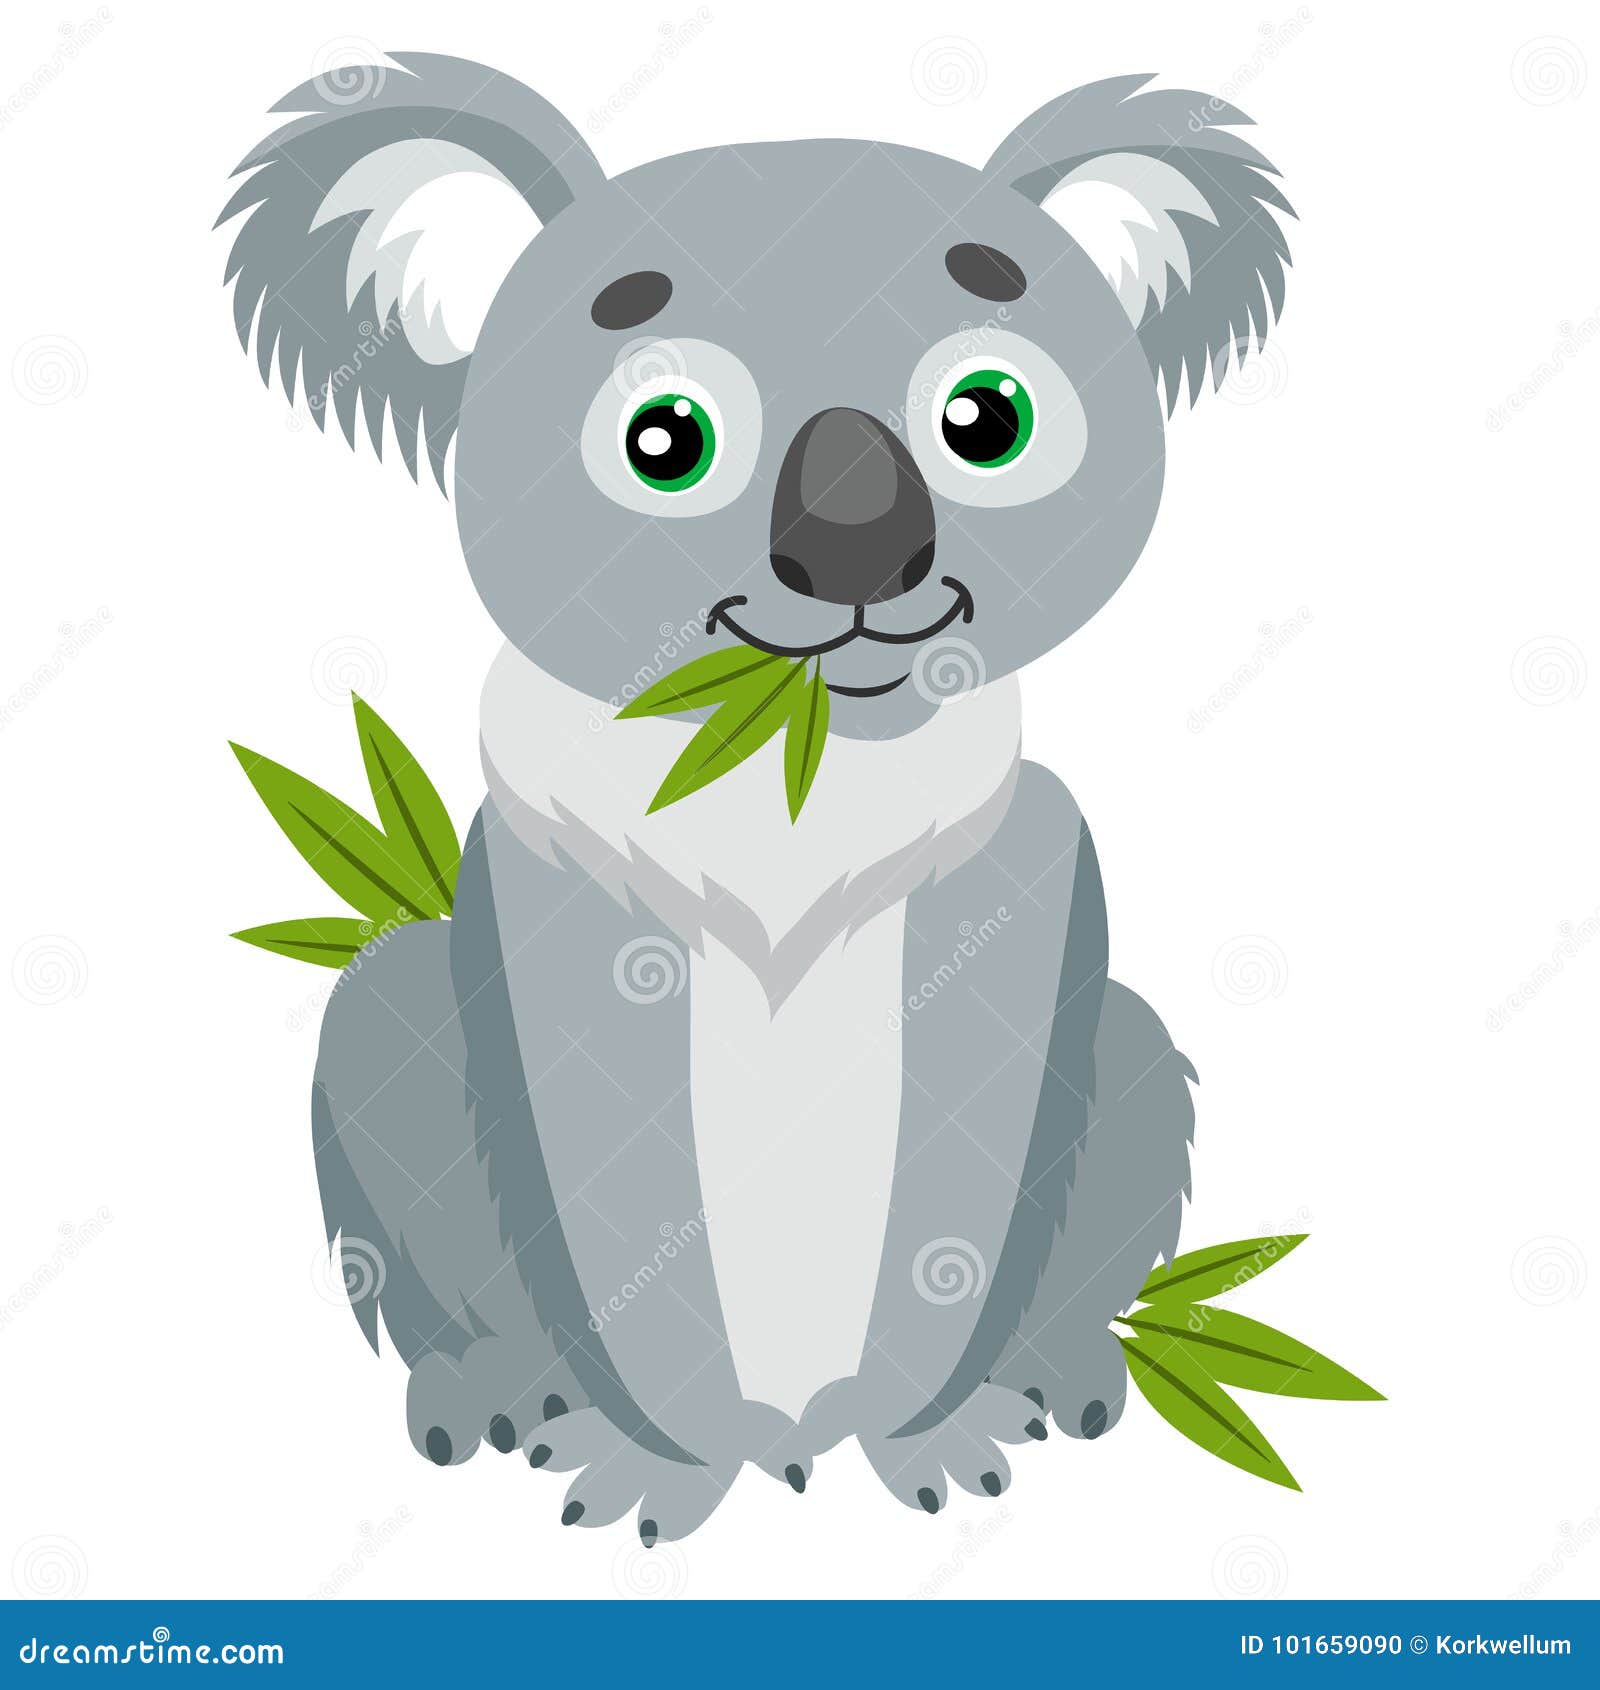 iconic marsupials. koala bear on green leaves. australian animal funniest herbivore sitting on eucalyptus.